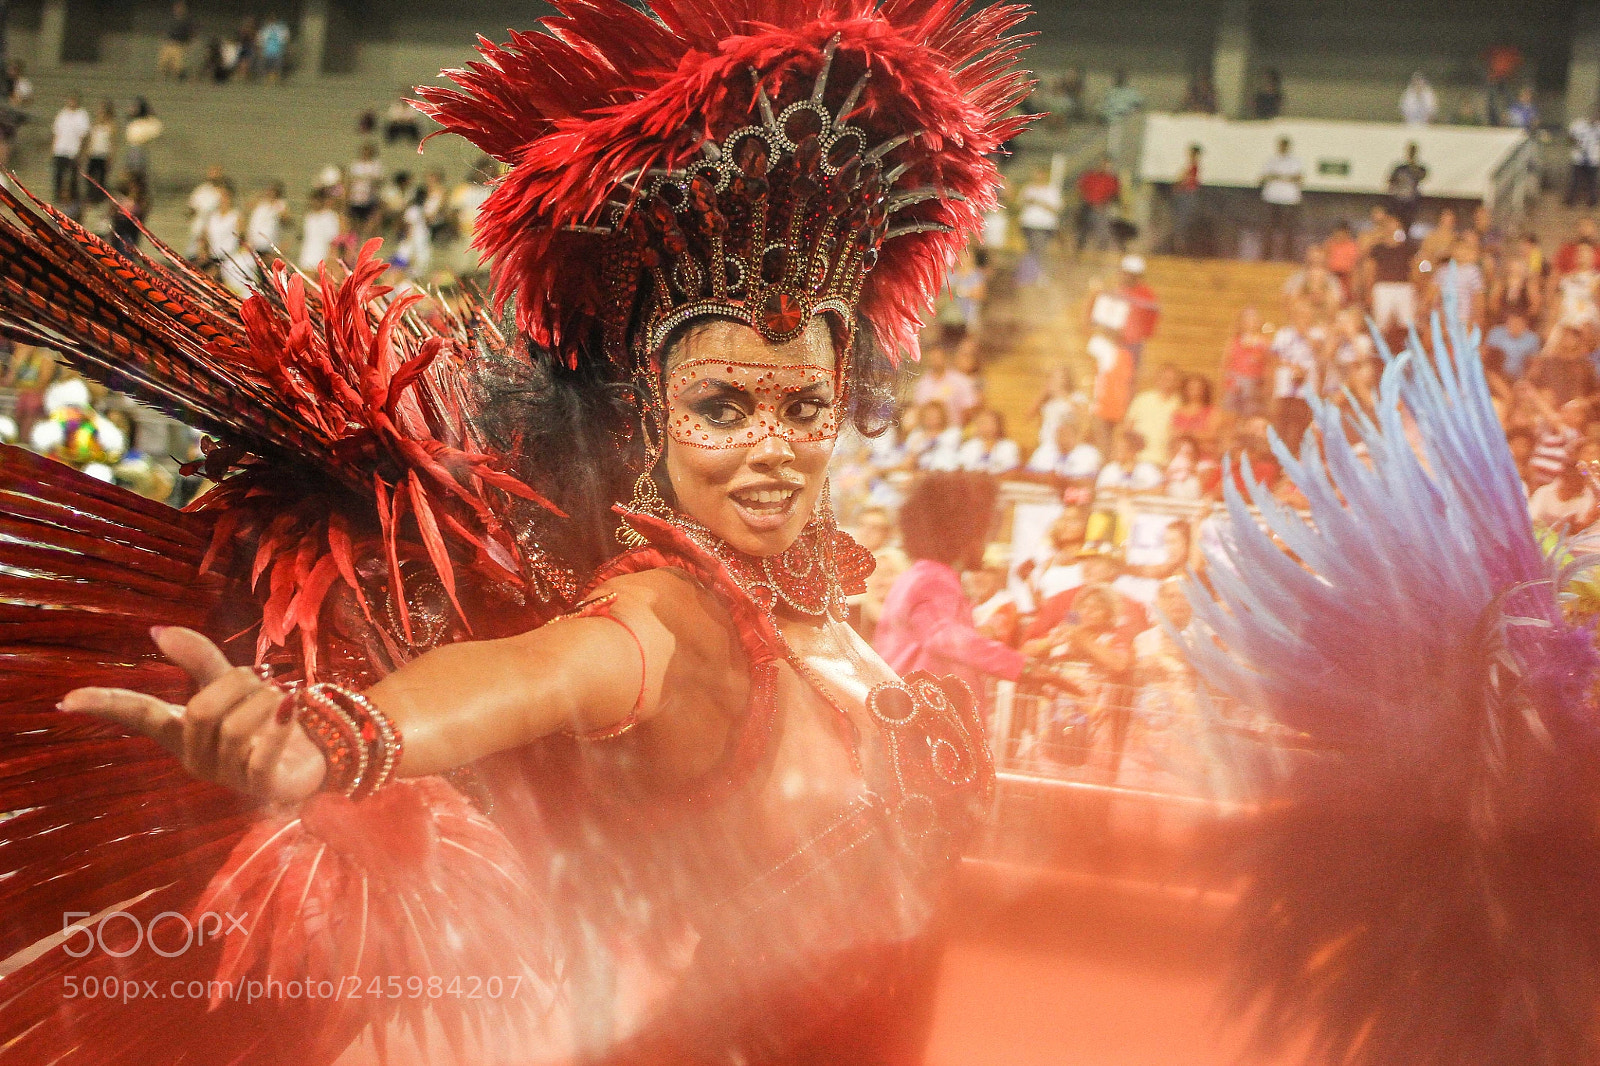 Canon EOS 7D sample photo. Carnival parade brazil photography